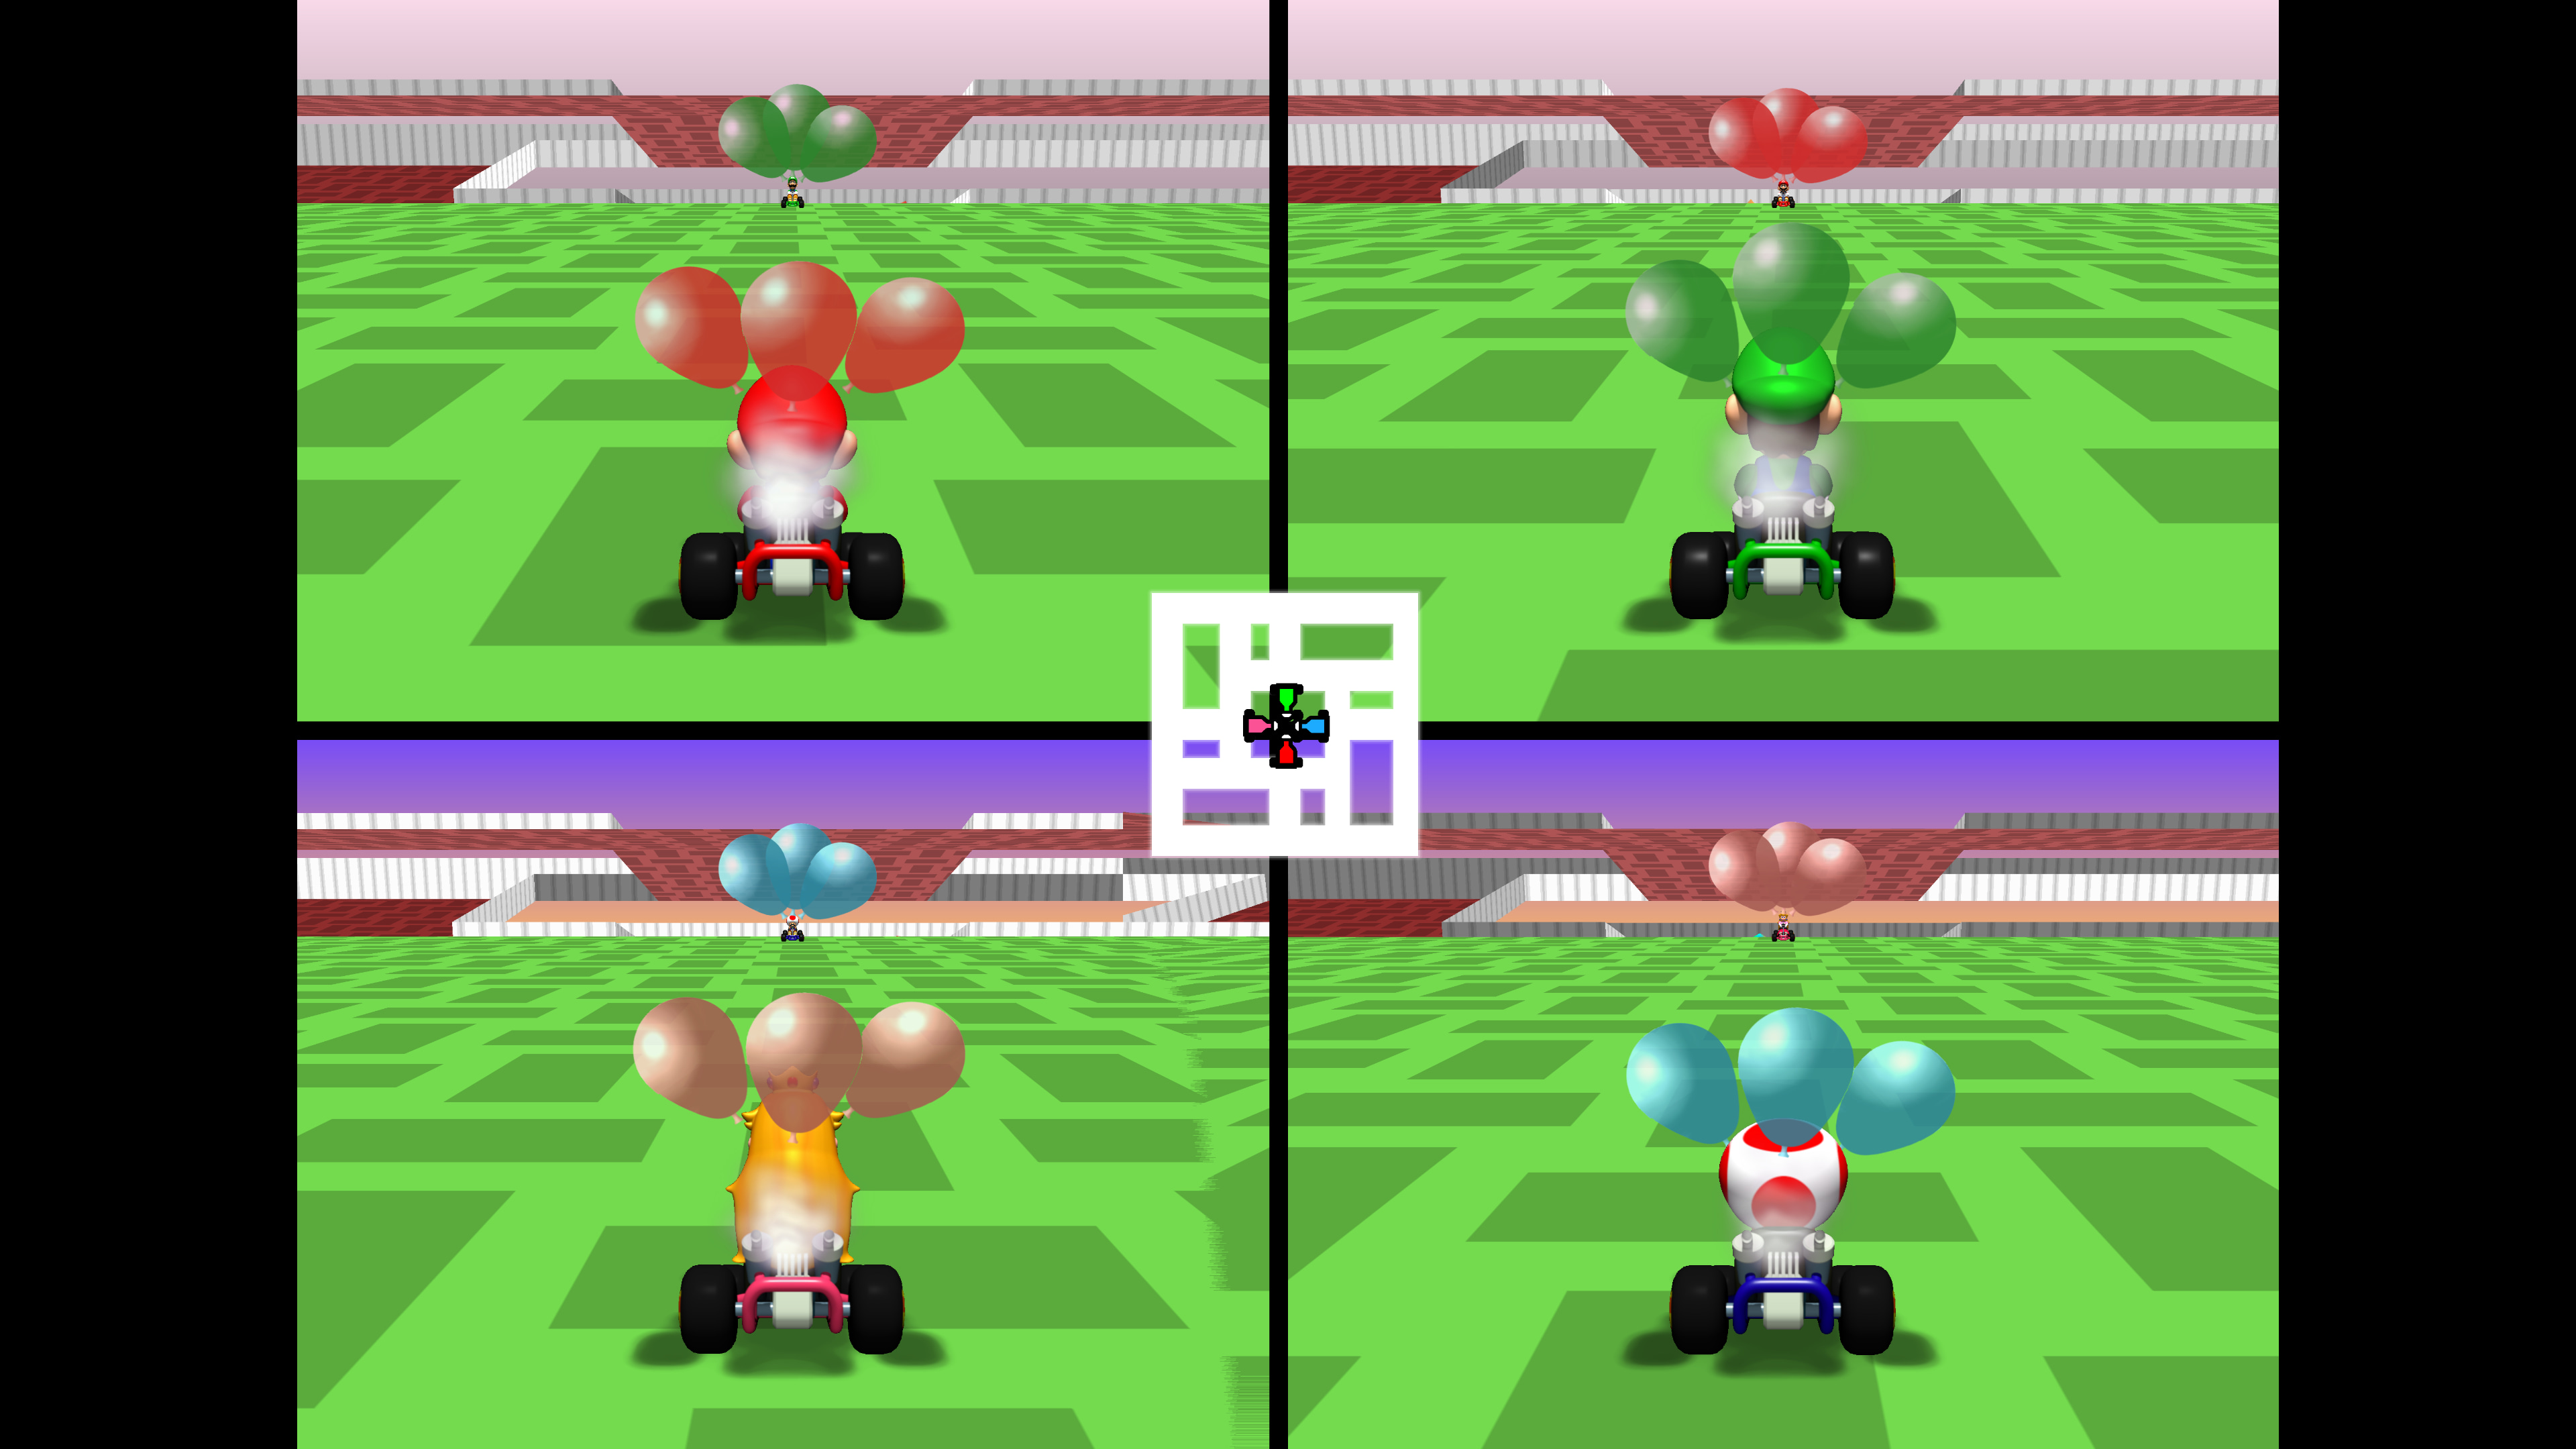 Mario Kart 64 ganha surpreendente versão em HD feita por fãs